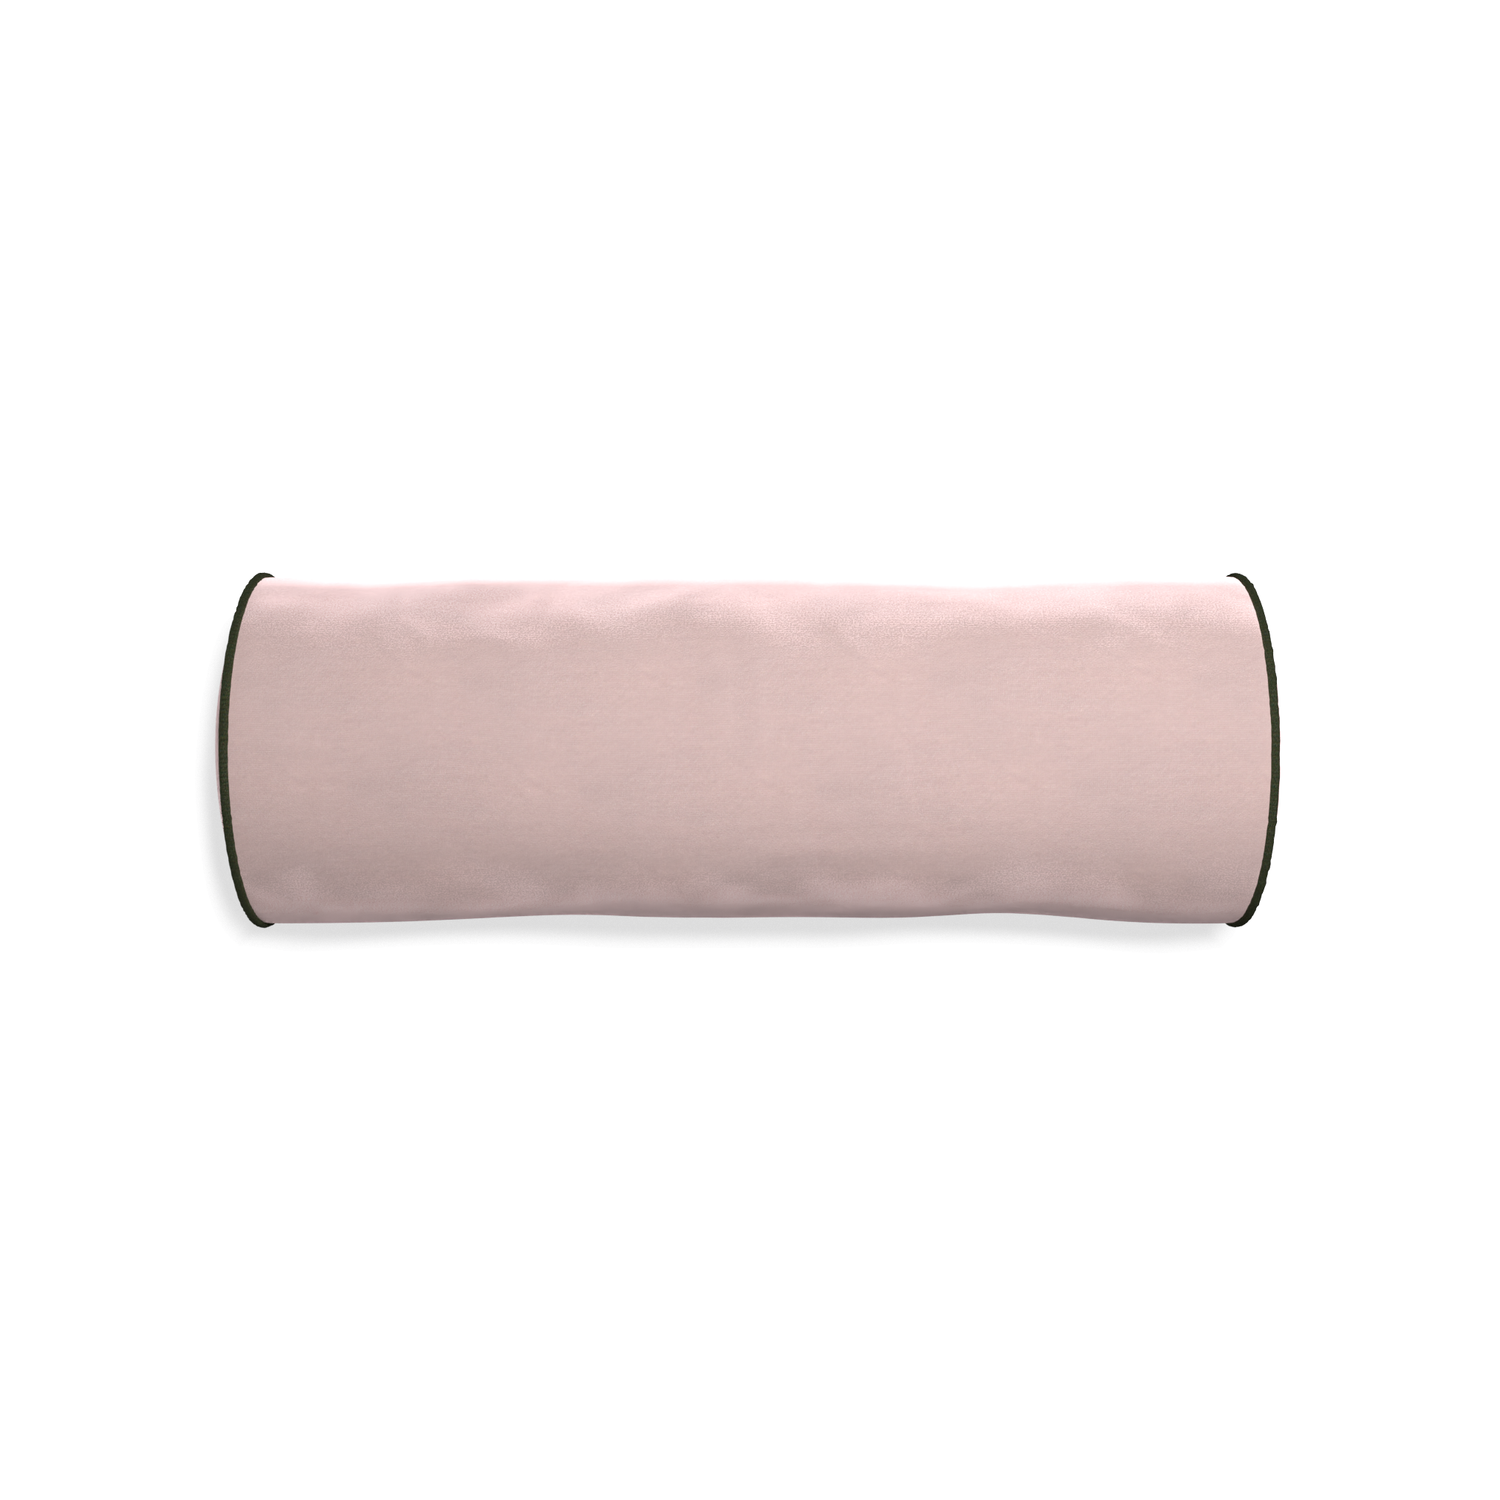 Bolster rose velvet custom pillow with f piping on white background